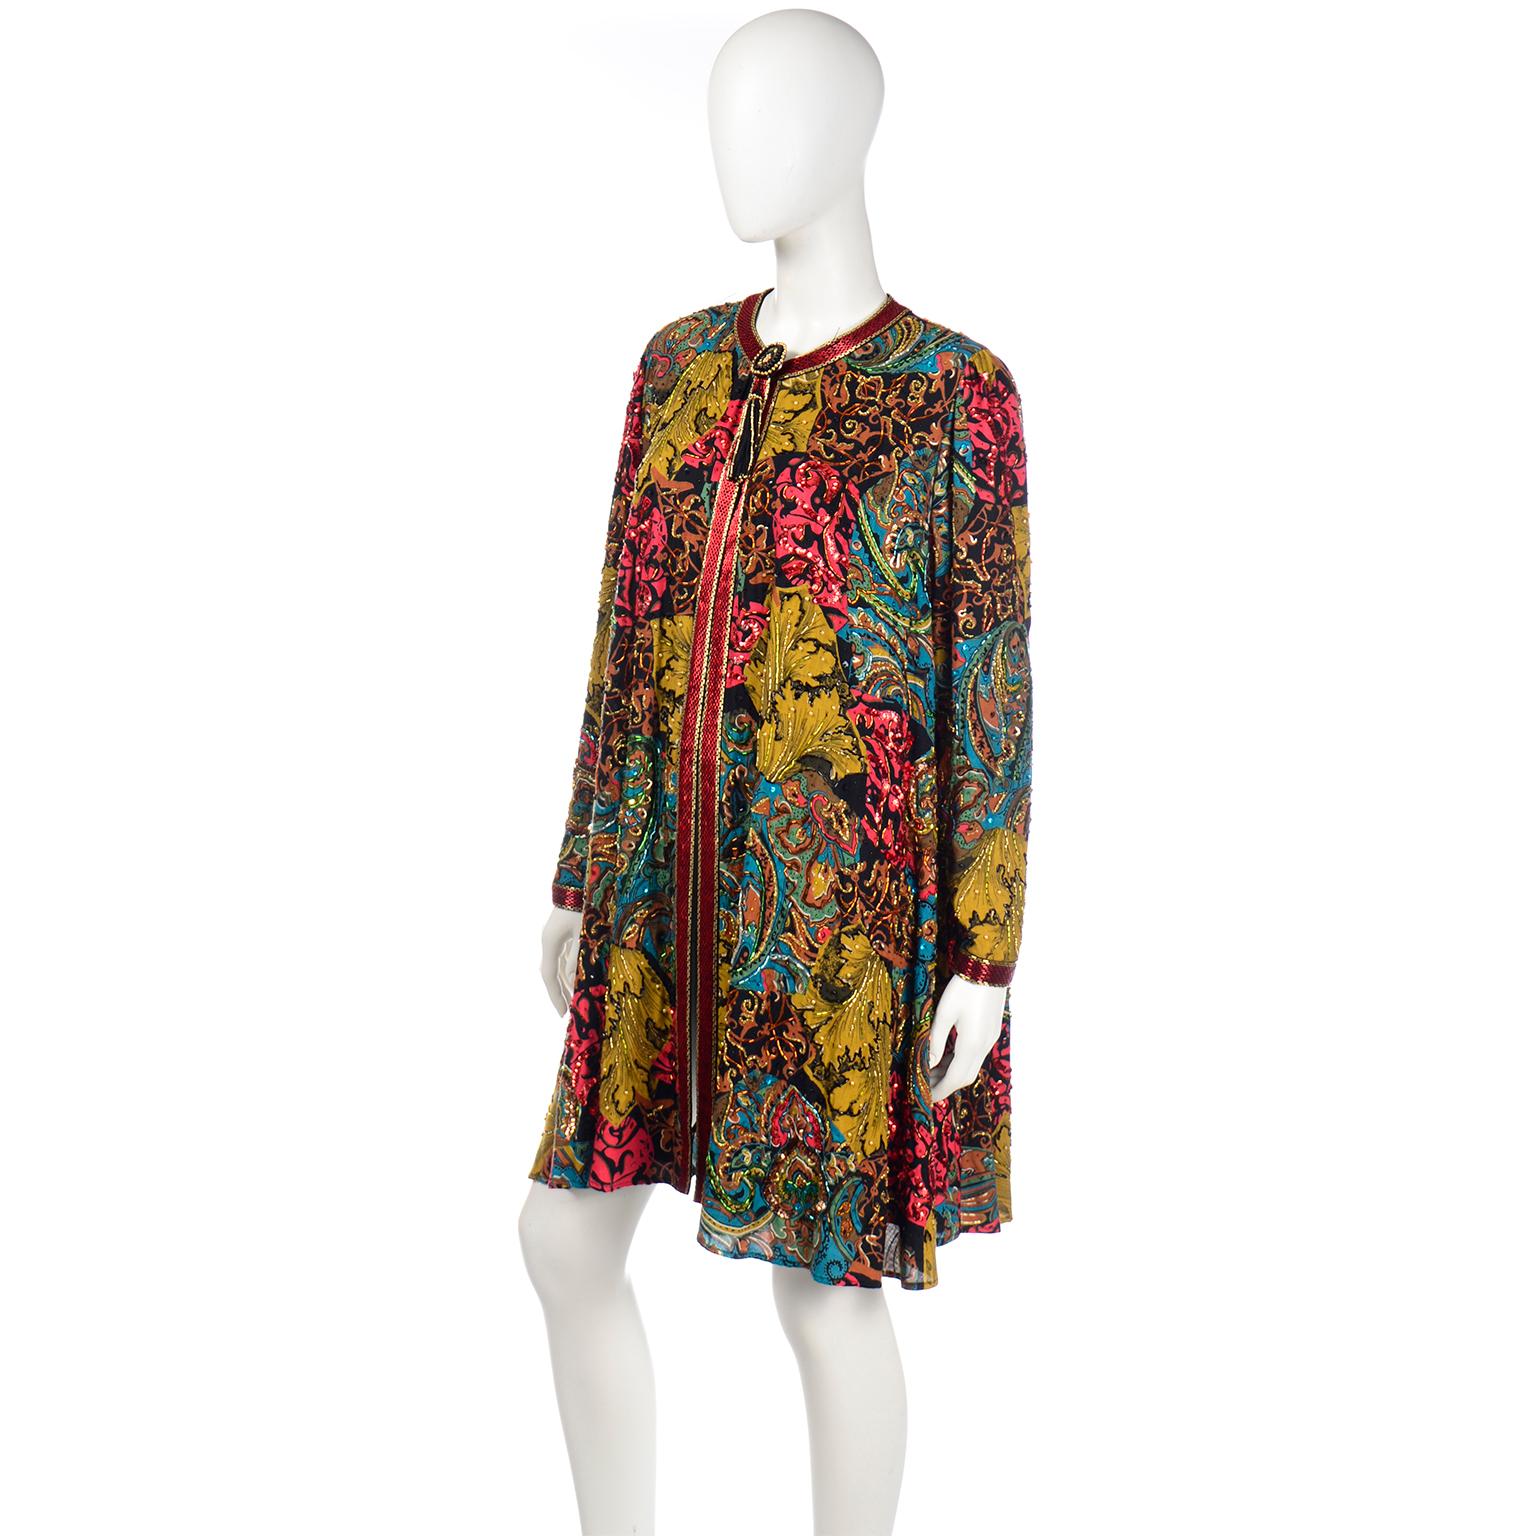 Vintage Diane Freis Beaded Sequin Swing Jacket in Multi Colored Baroque Print 1